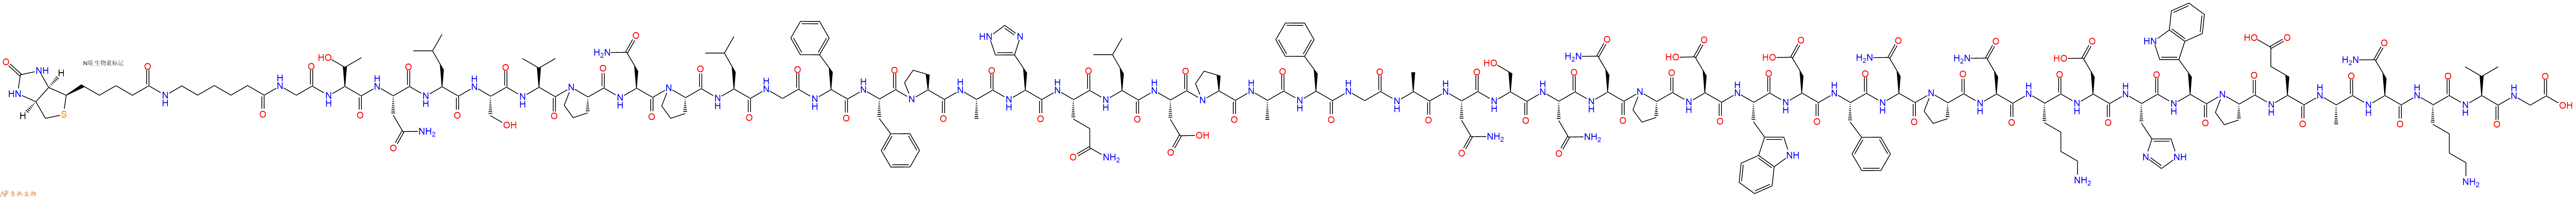 专肽生物产品生物素标记肽Biotin-Acp-Gly-Thr-Asn-Leu-Ser-Val-Pro-Asn-P